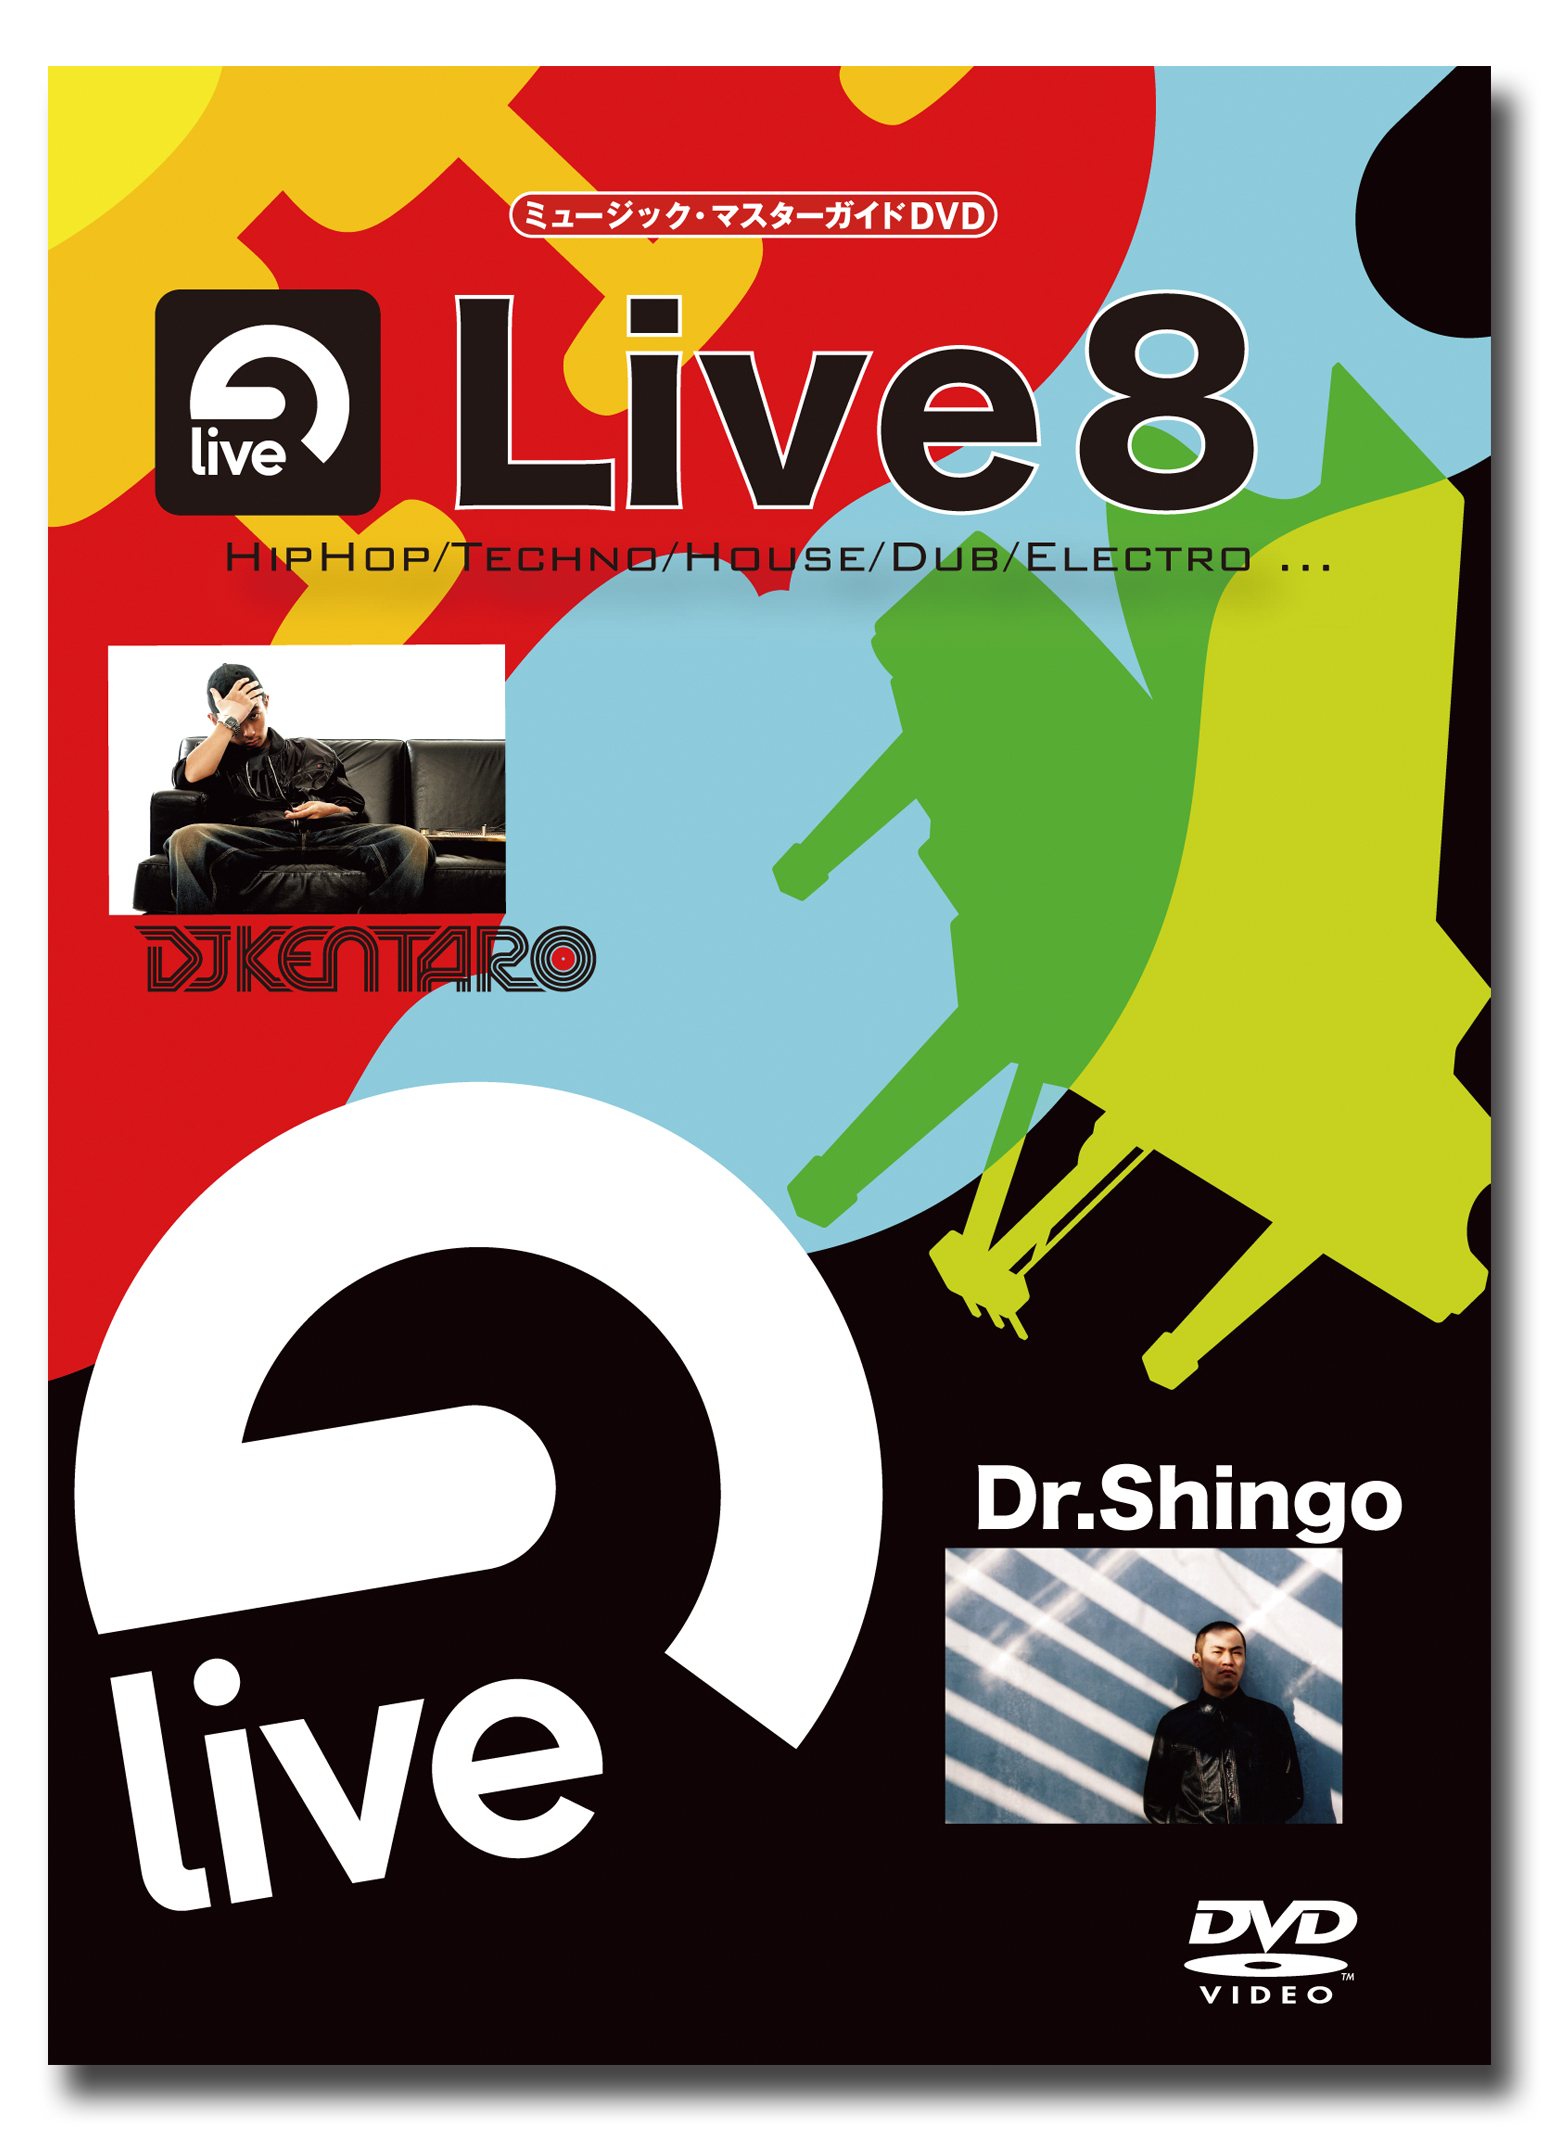 ミュージック・マスターガイド「Live 8」(DVD) -DJ機材アナログ ...